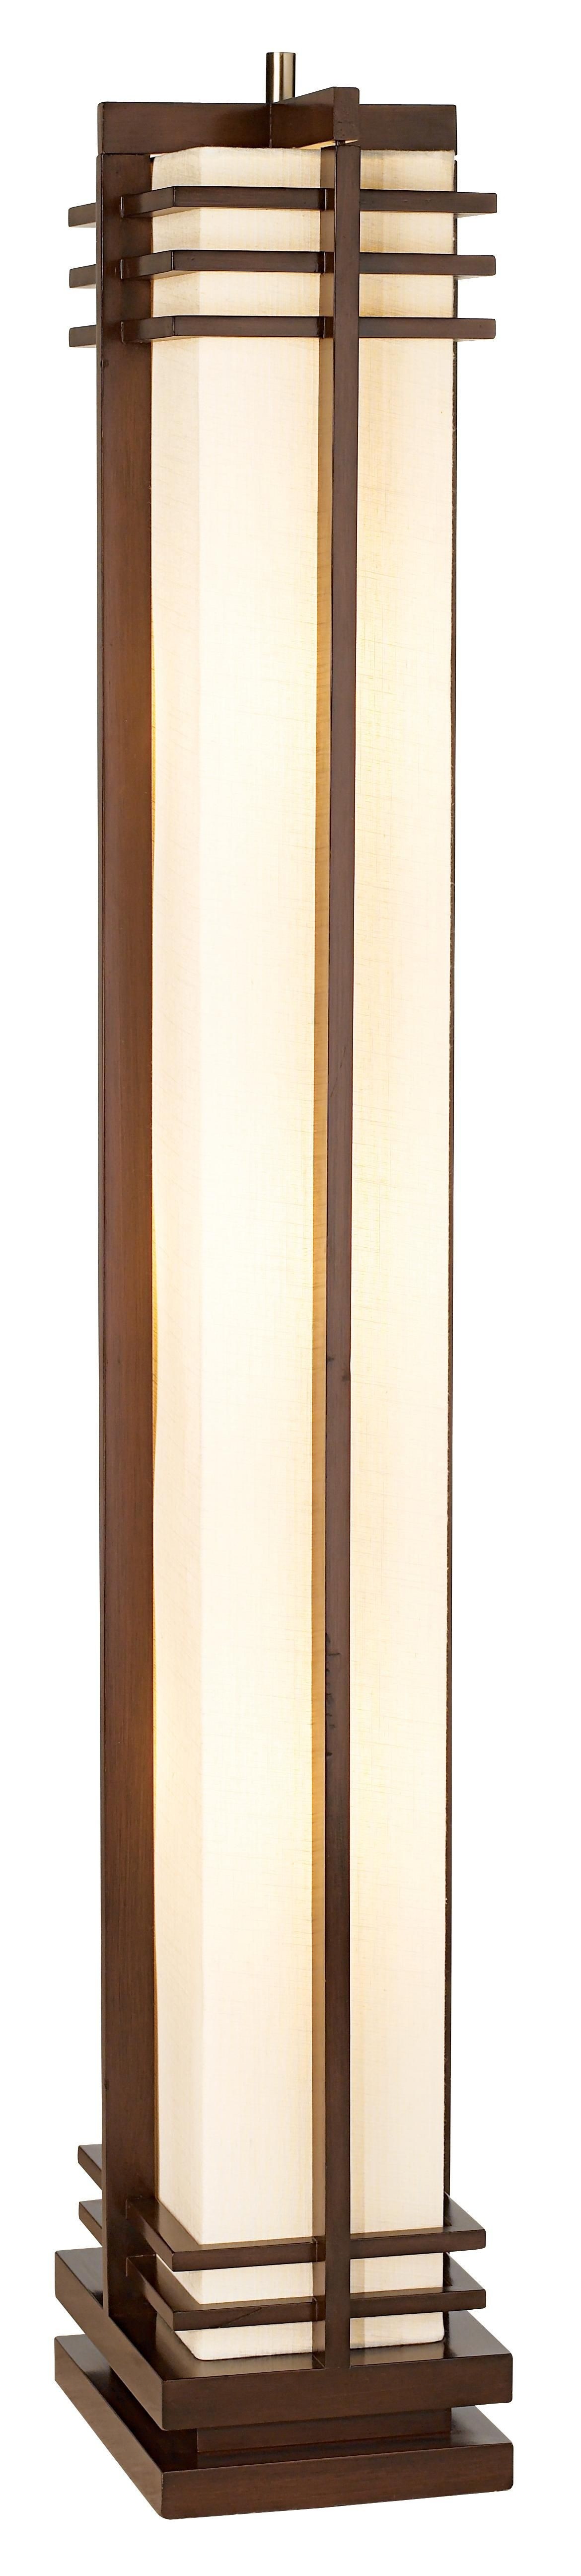 Possini euro design deco style column floor lamp 48254 2